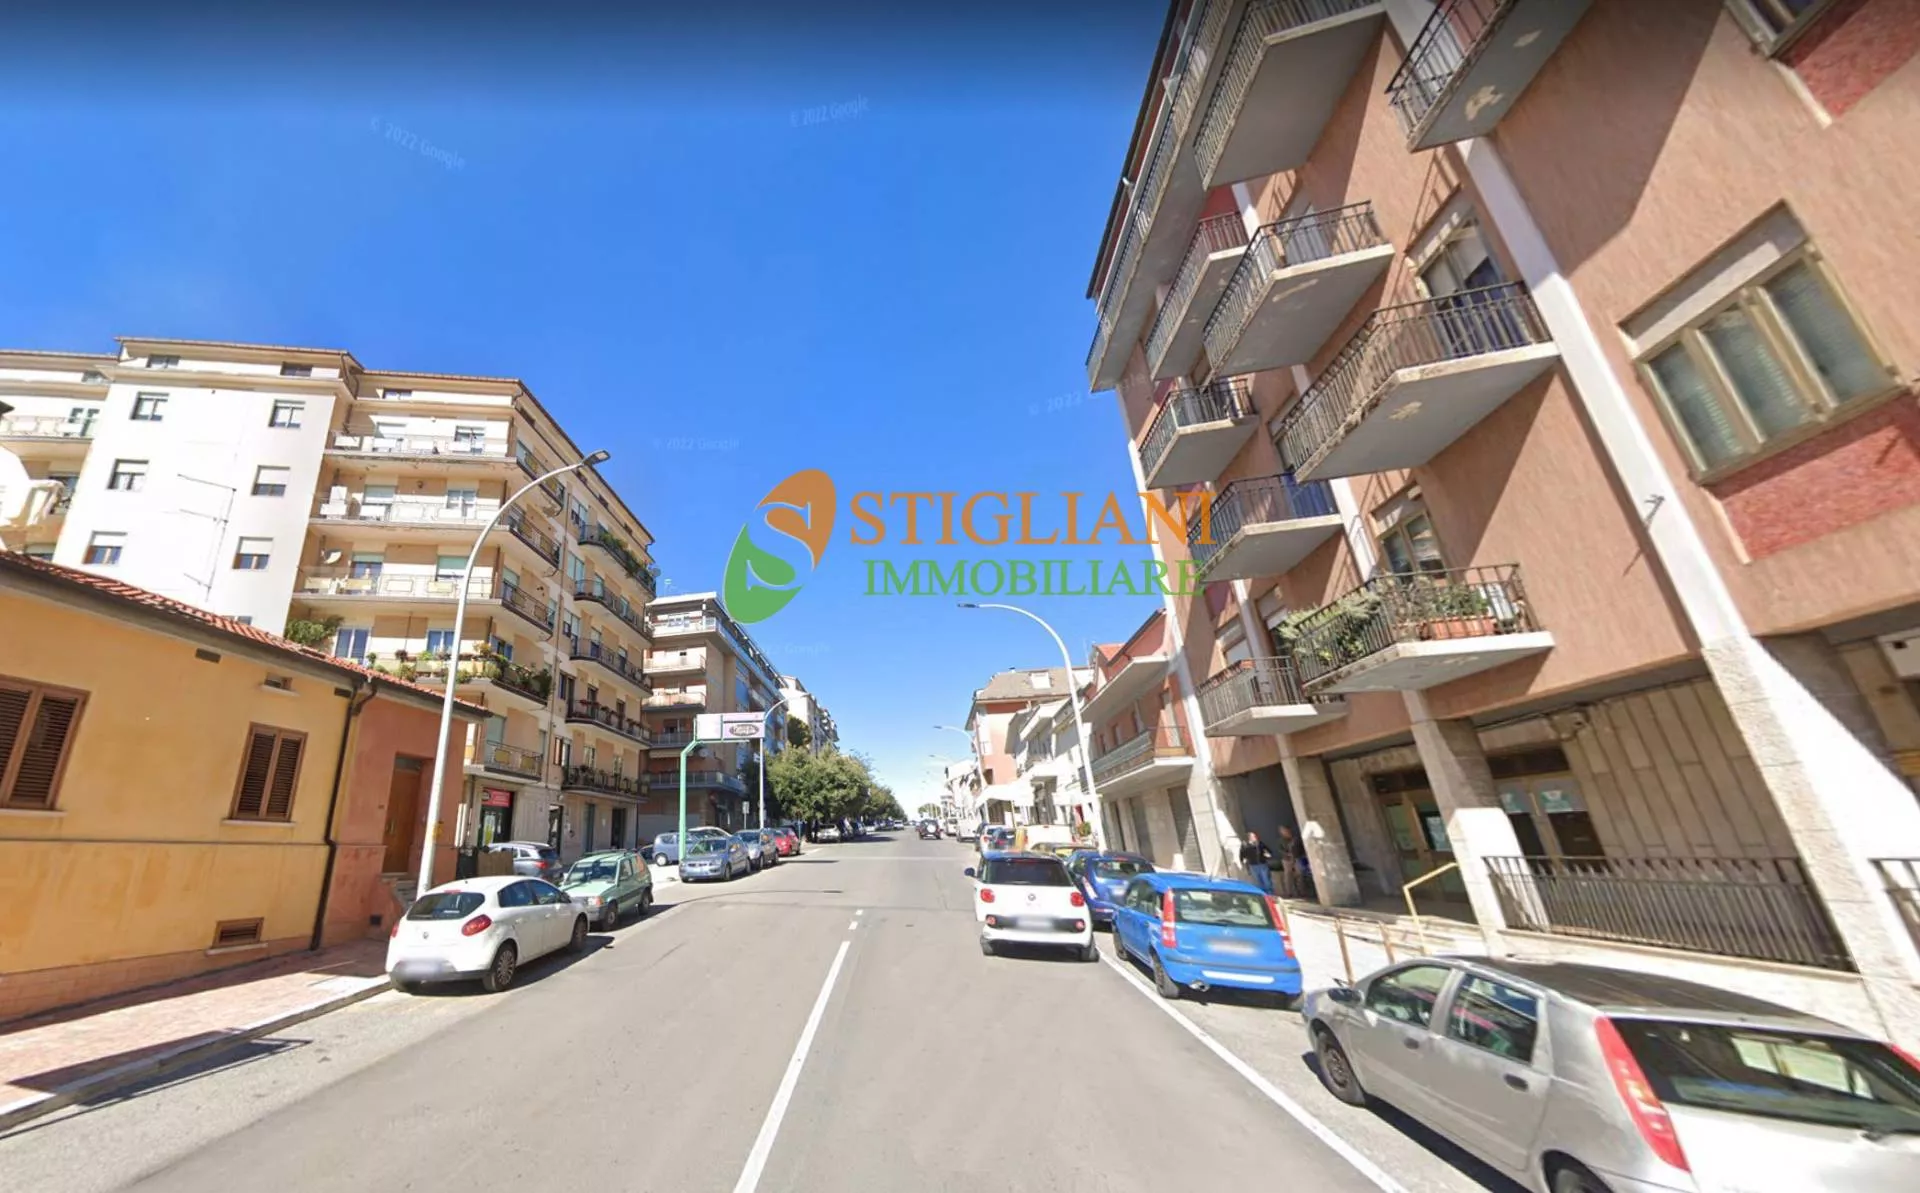 Immagine per Locale Commerciale in vendita a Campobasso zona via XXIV Maggio